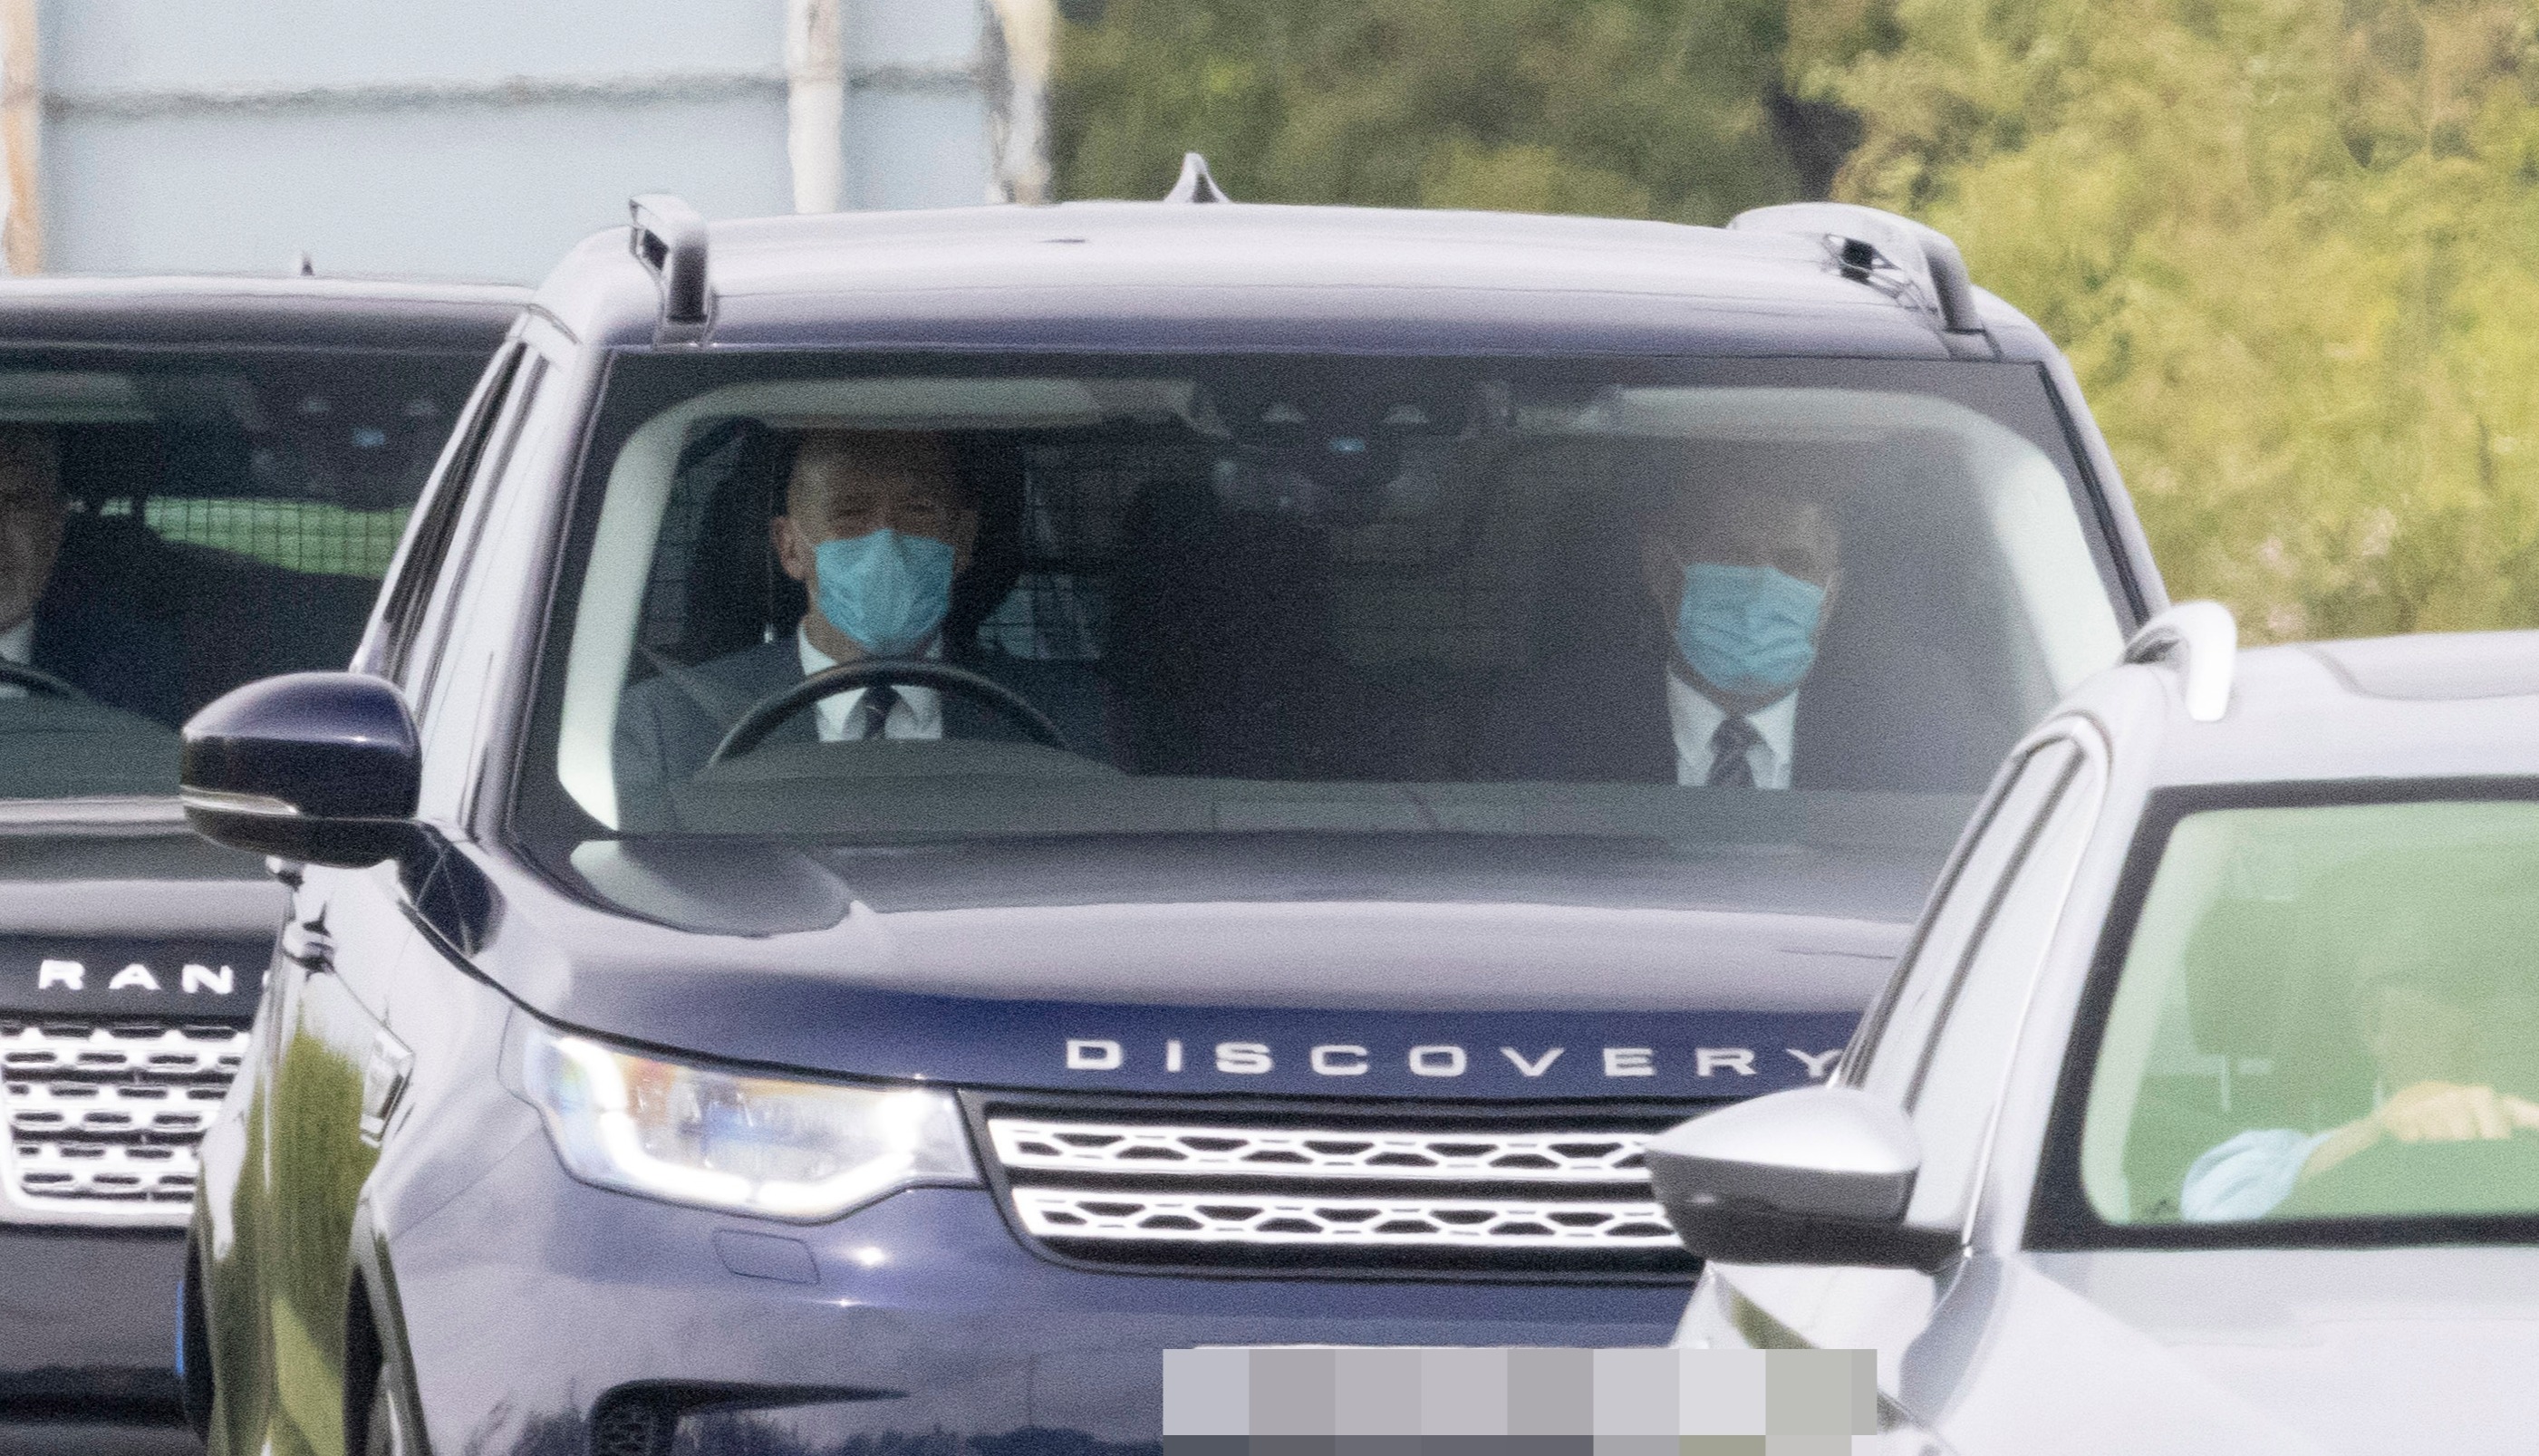 Герцог, изображенный на заднем сиденье Land Rover Discovery, сегодня днем примет участие в пикантном частном сервисе.